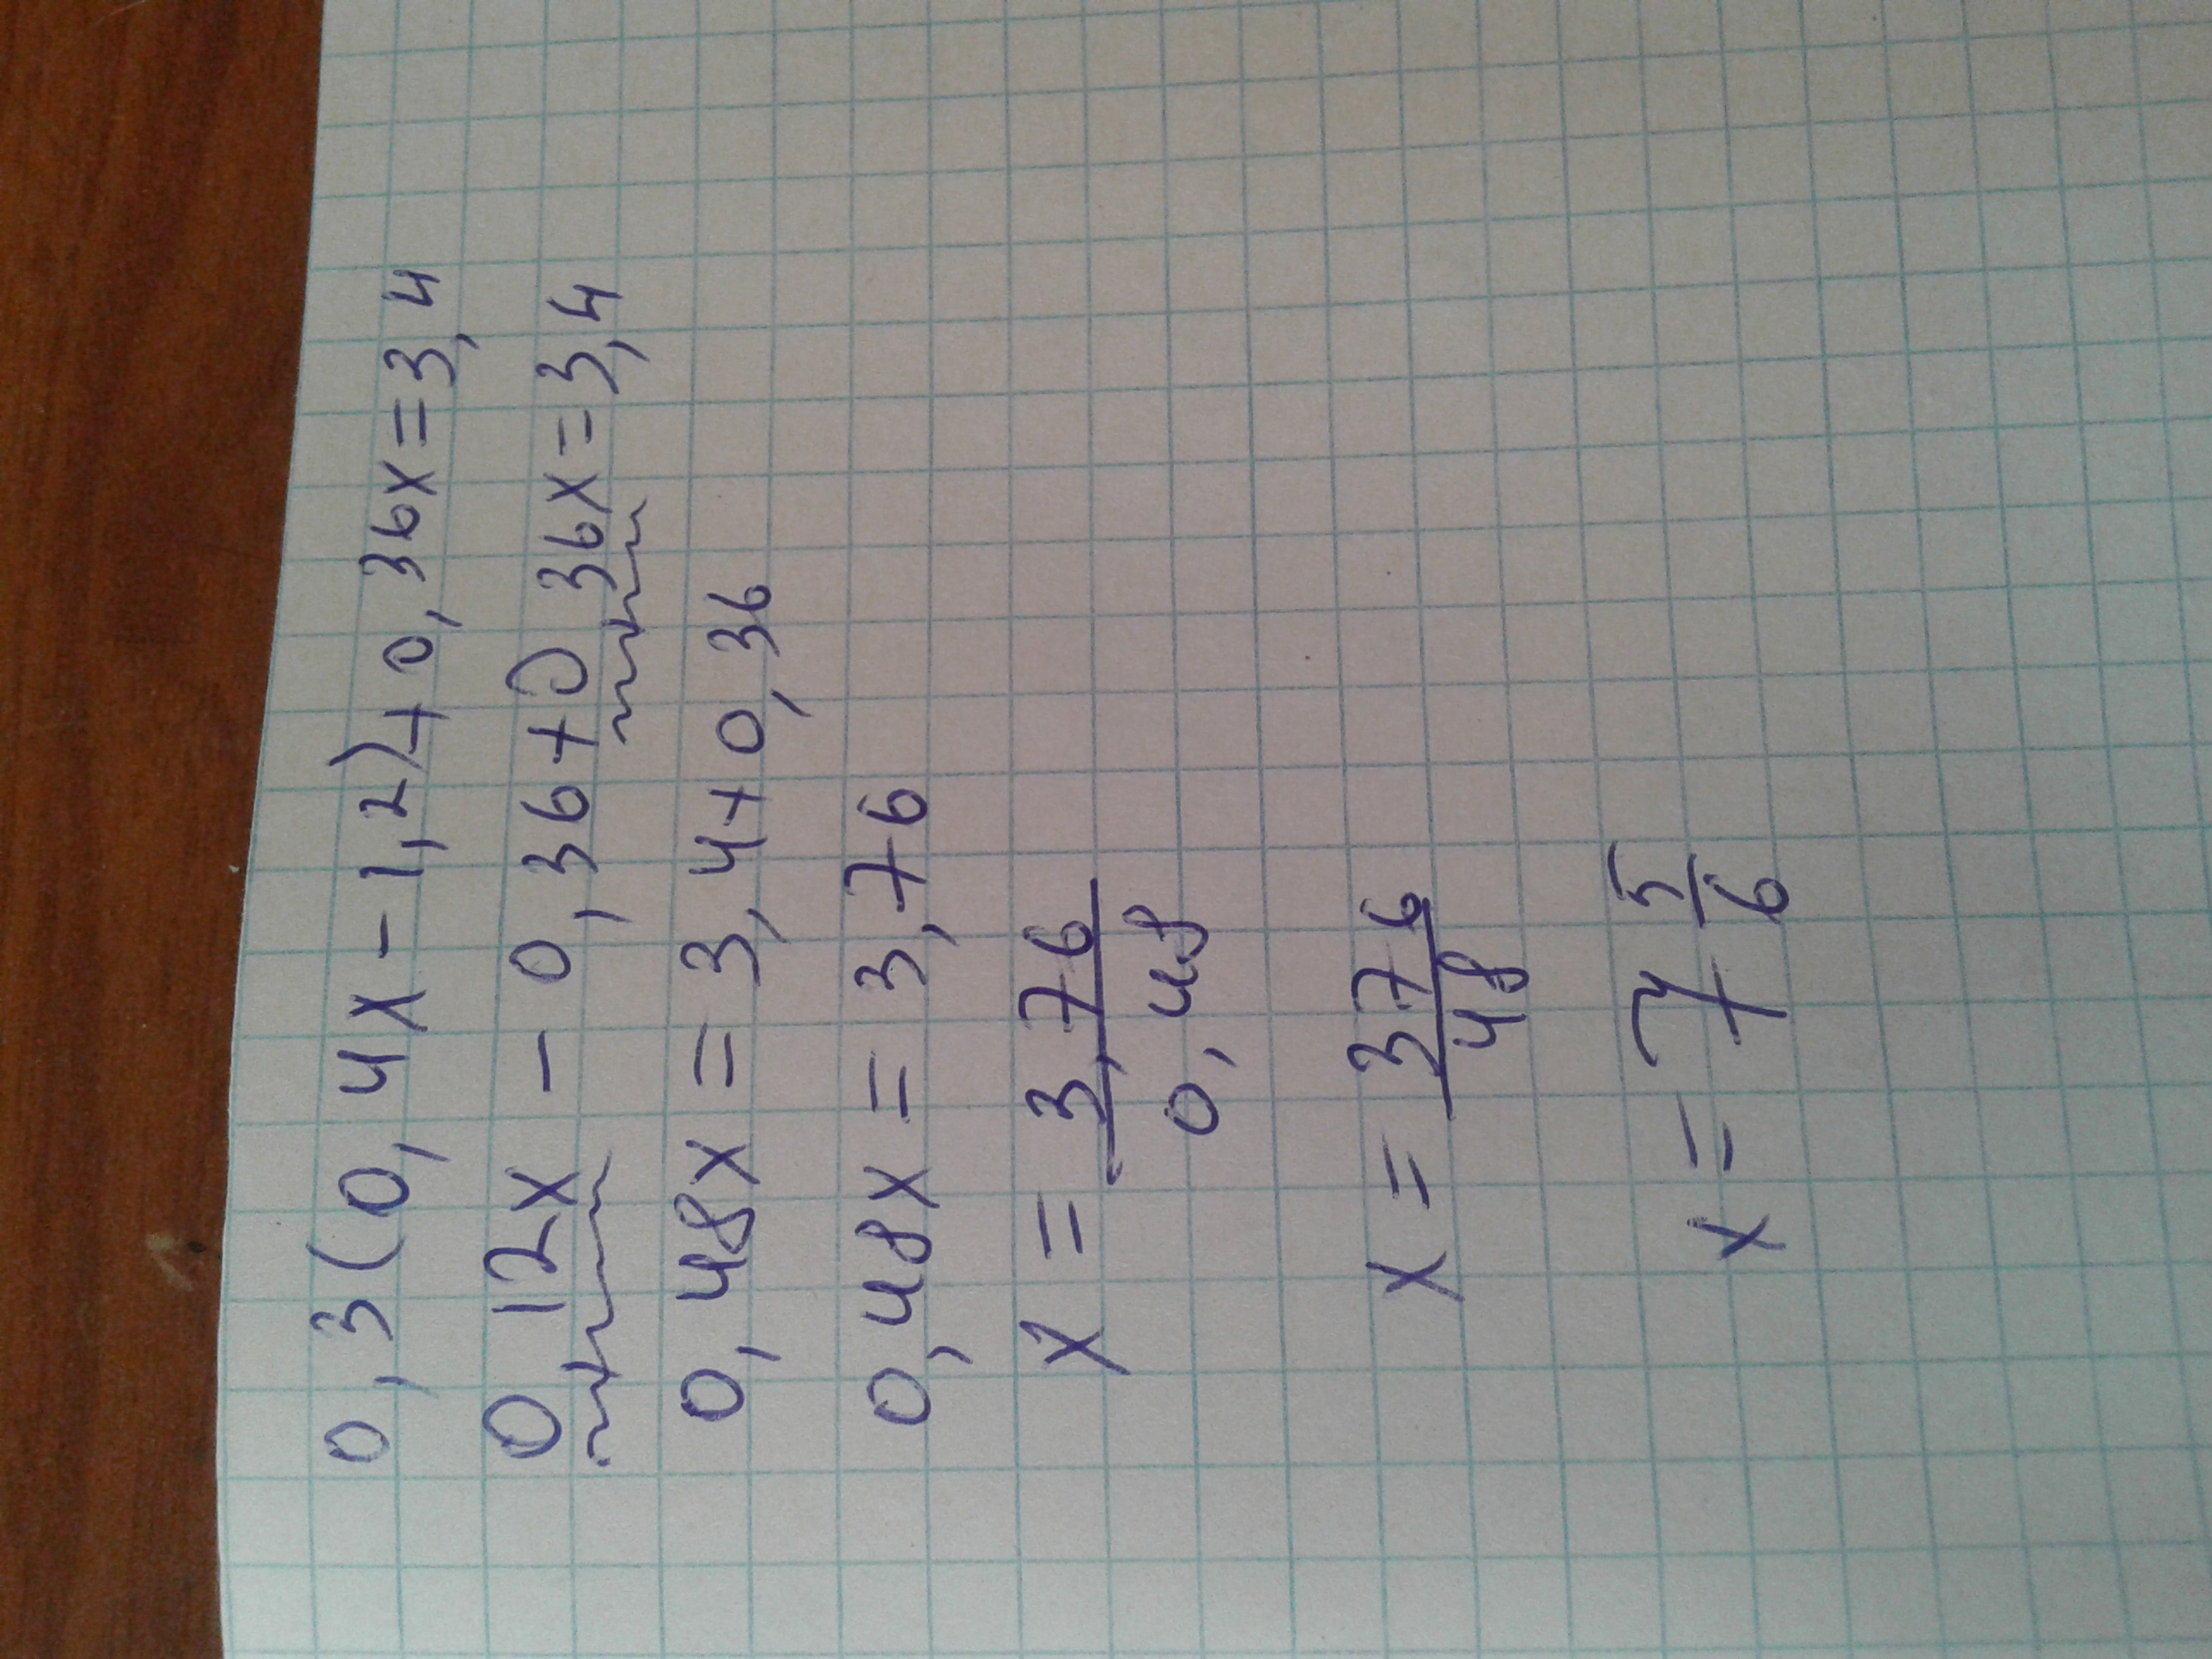 21 6 8 х 8. 8х4. (Х:8)*4=48. 7х8. Ответ к х+3х=76.